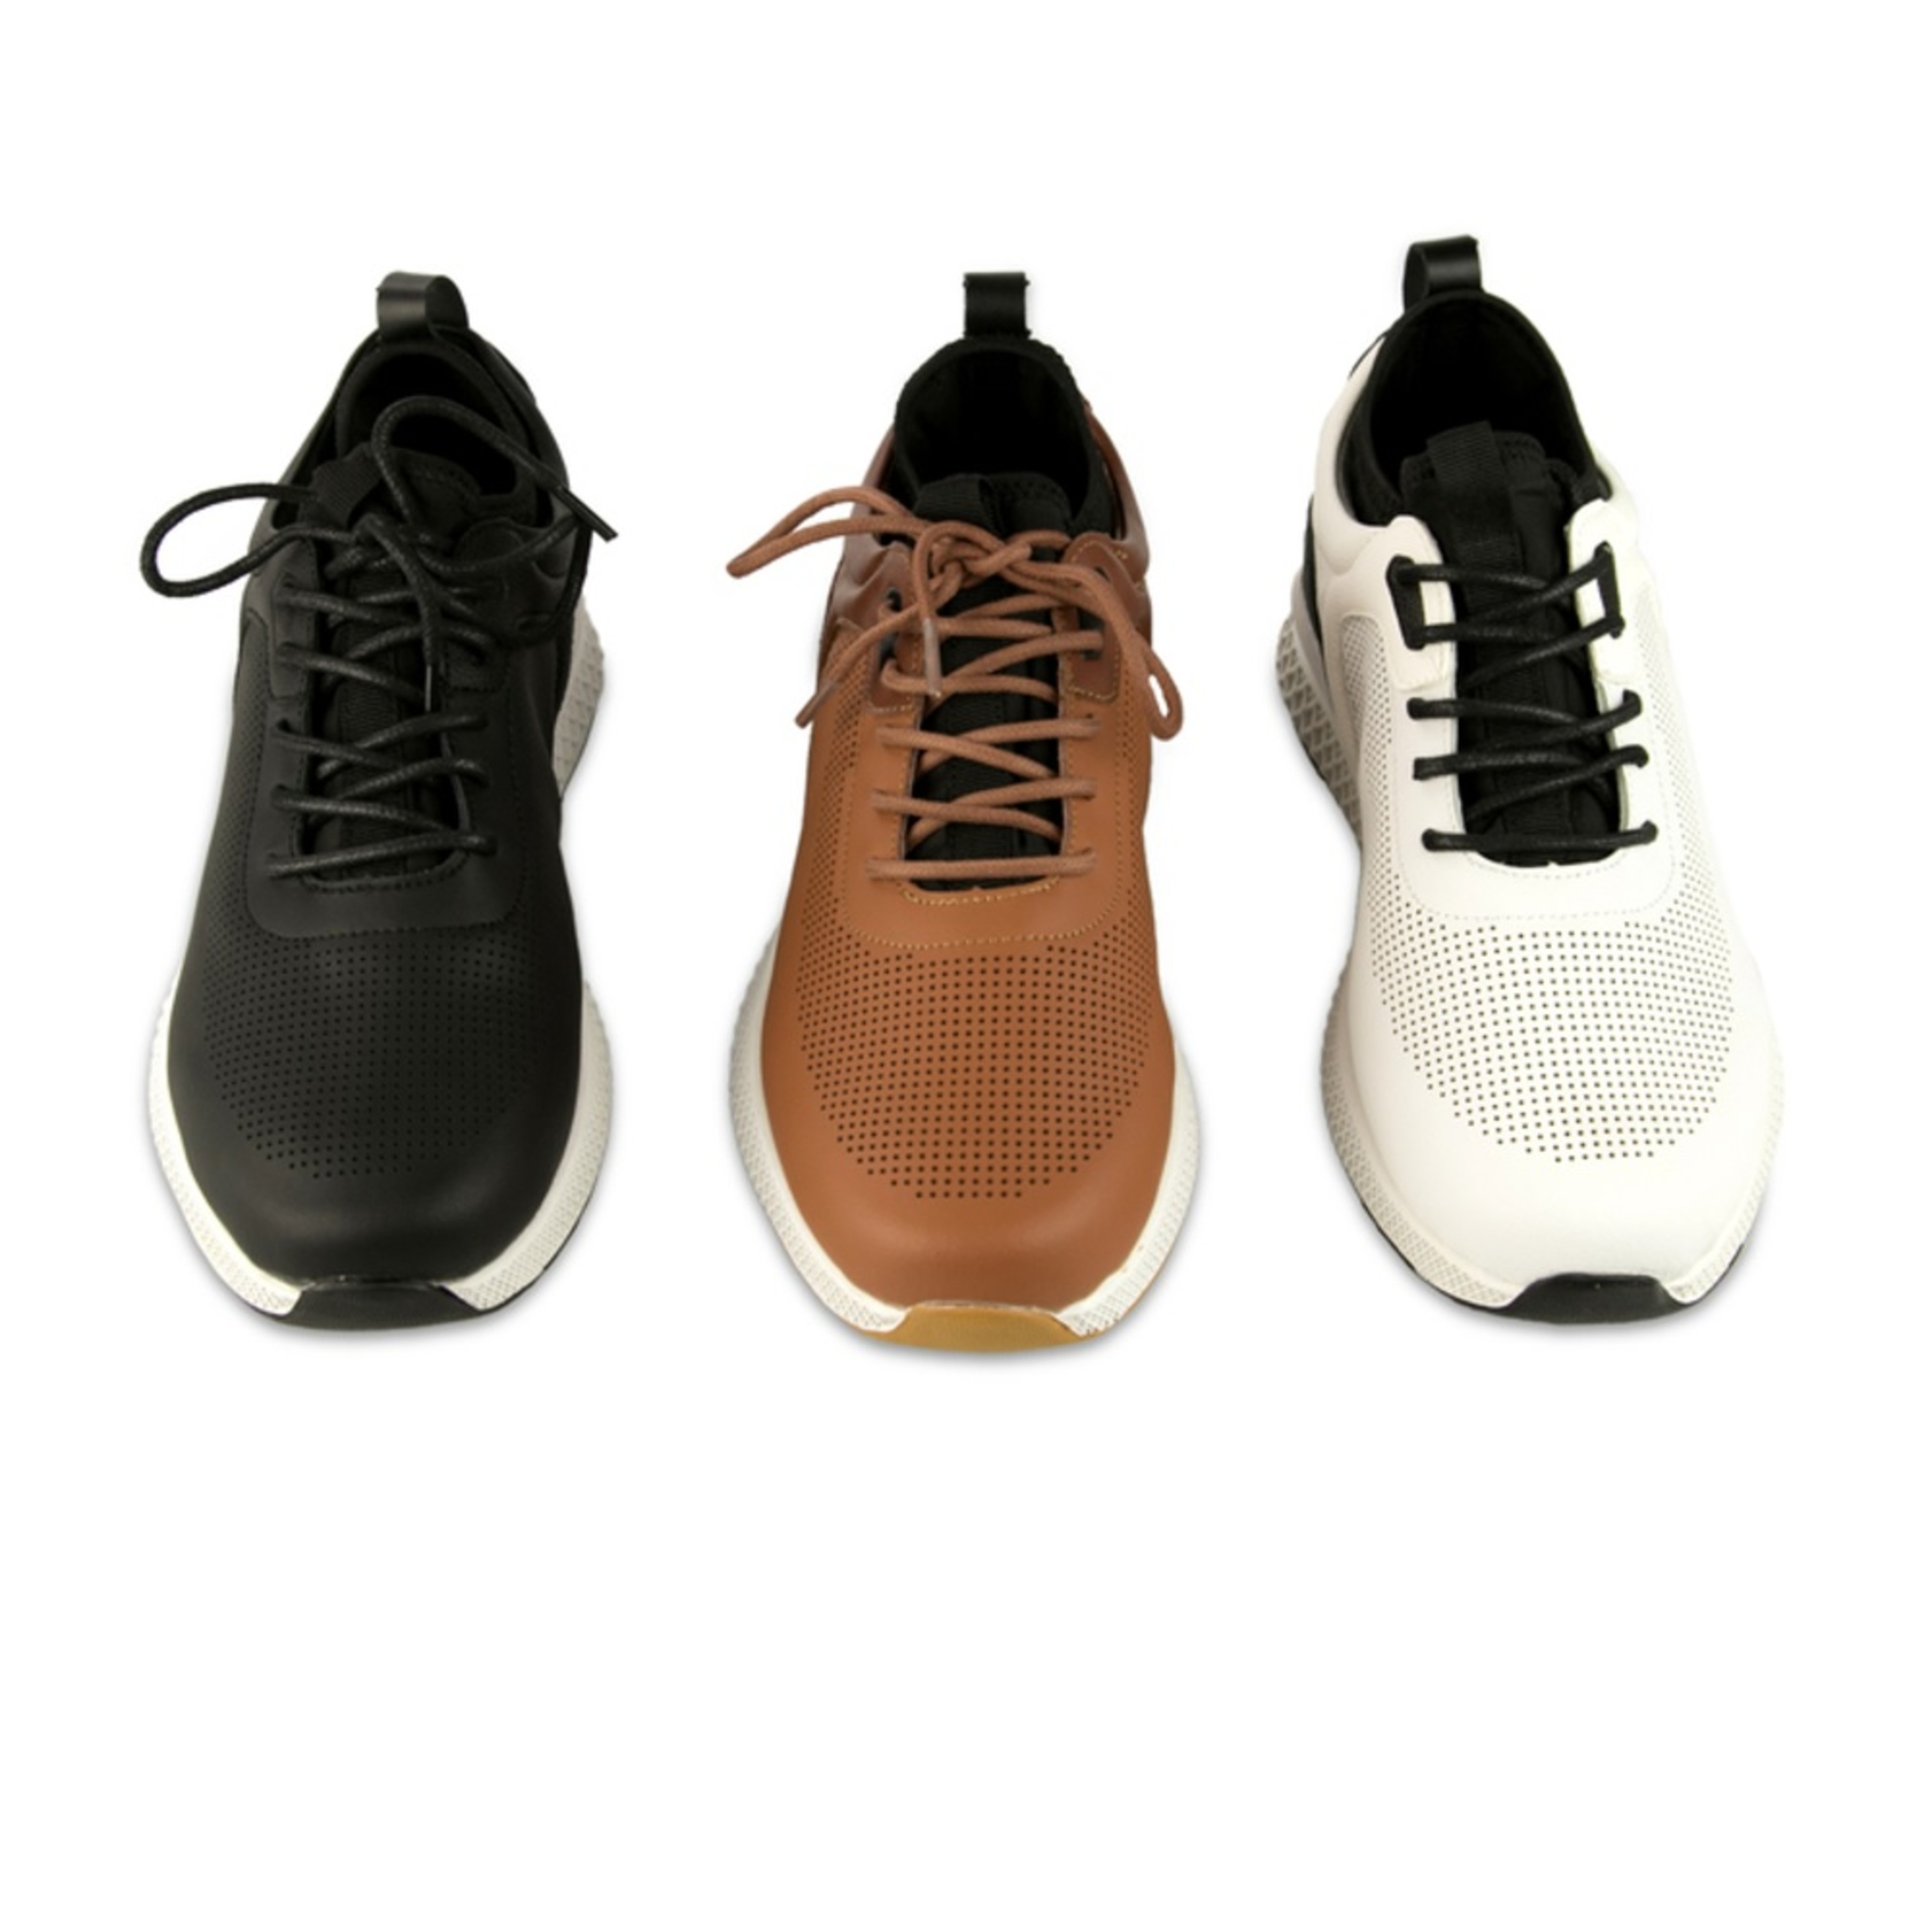 Zapatos De Golf Zerimar Con Troquelados - Marron - Zapatos Golf Hombre Zapatillas Piel  MKP